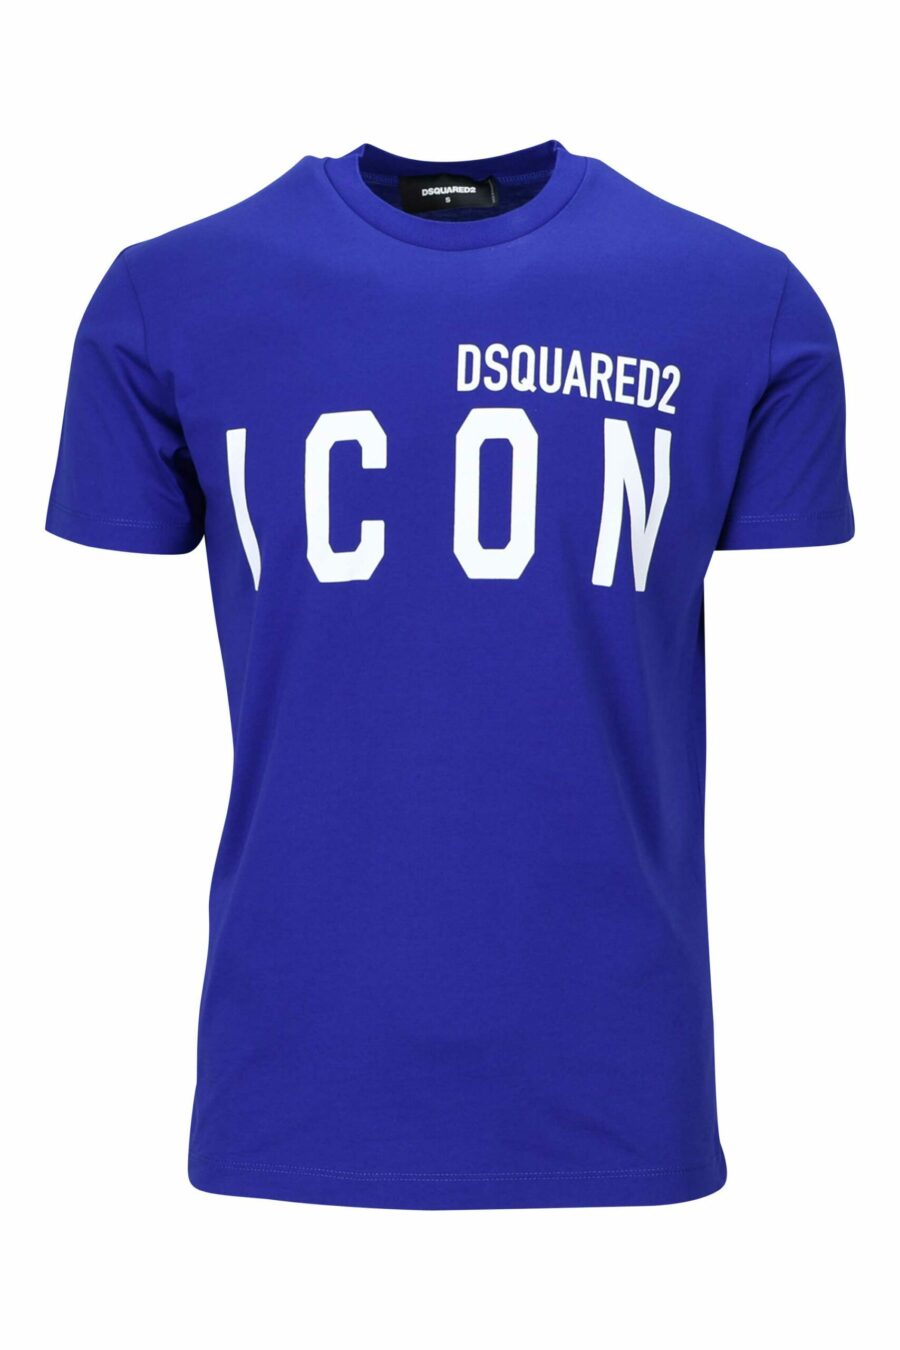 Camiseta azul electrico con maxilogo "icon" blanco - 8054148035525 scaled